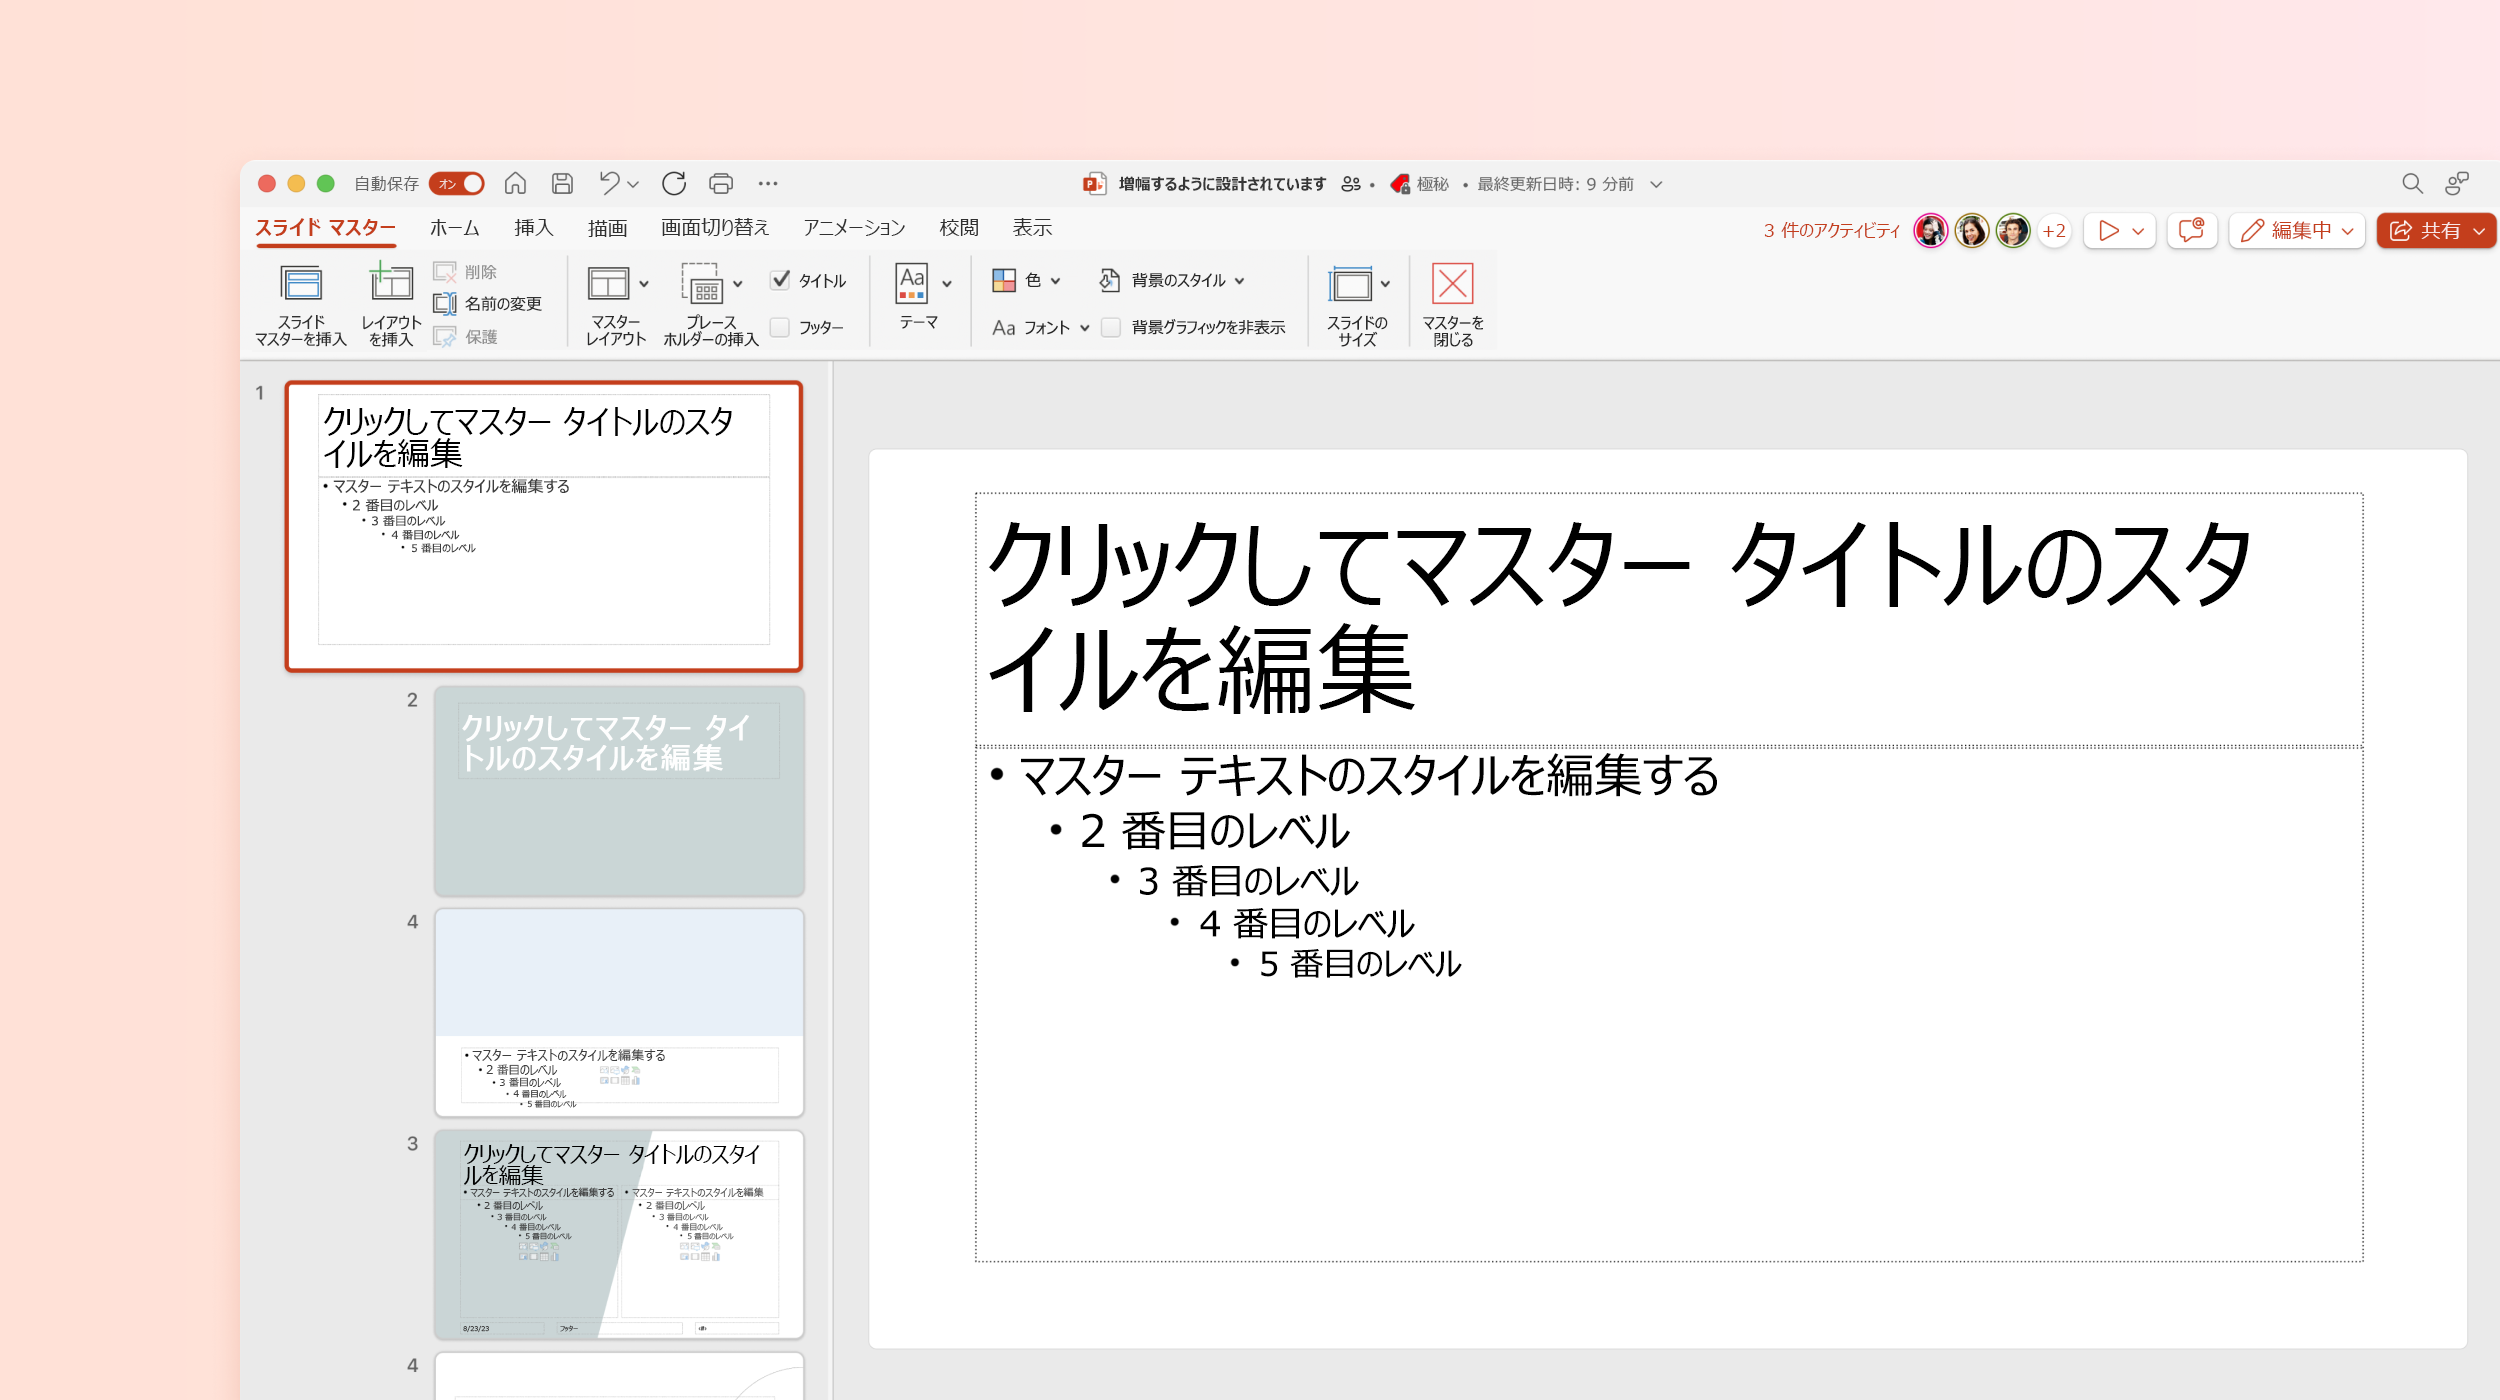 スクリーンショットは、PowerPoint テンプレートのスライド マスターを示しています。